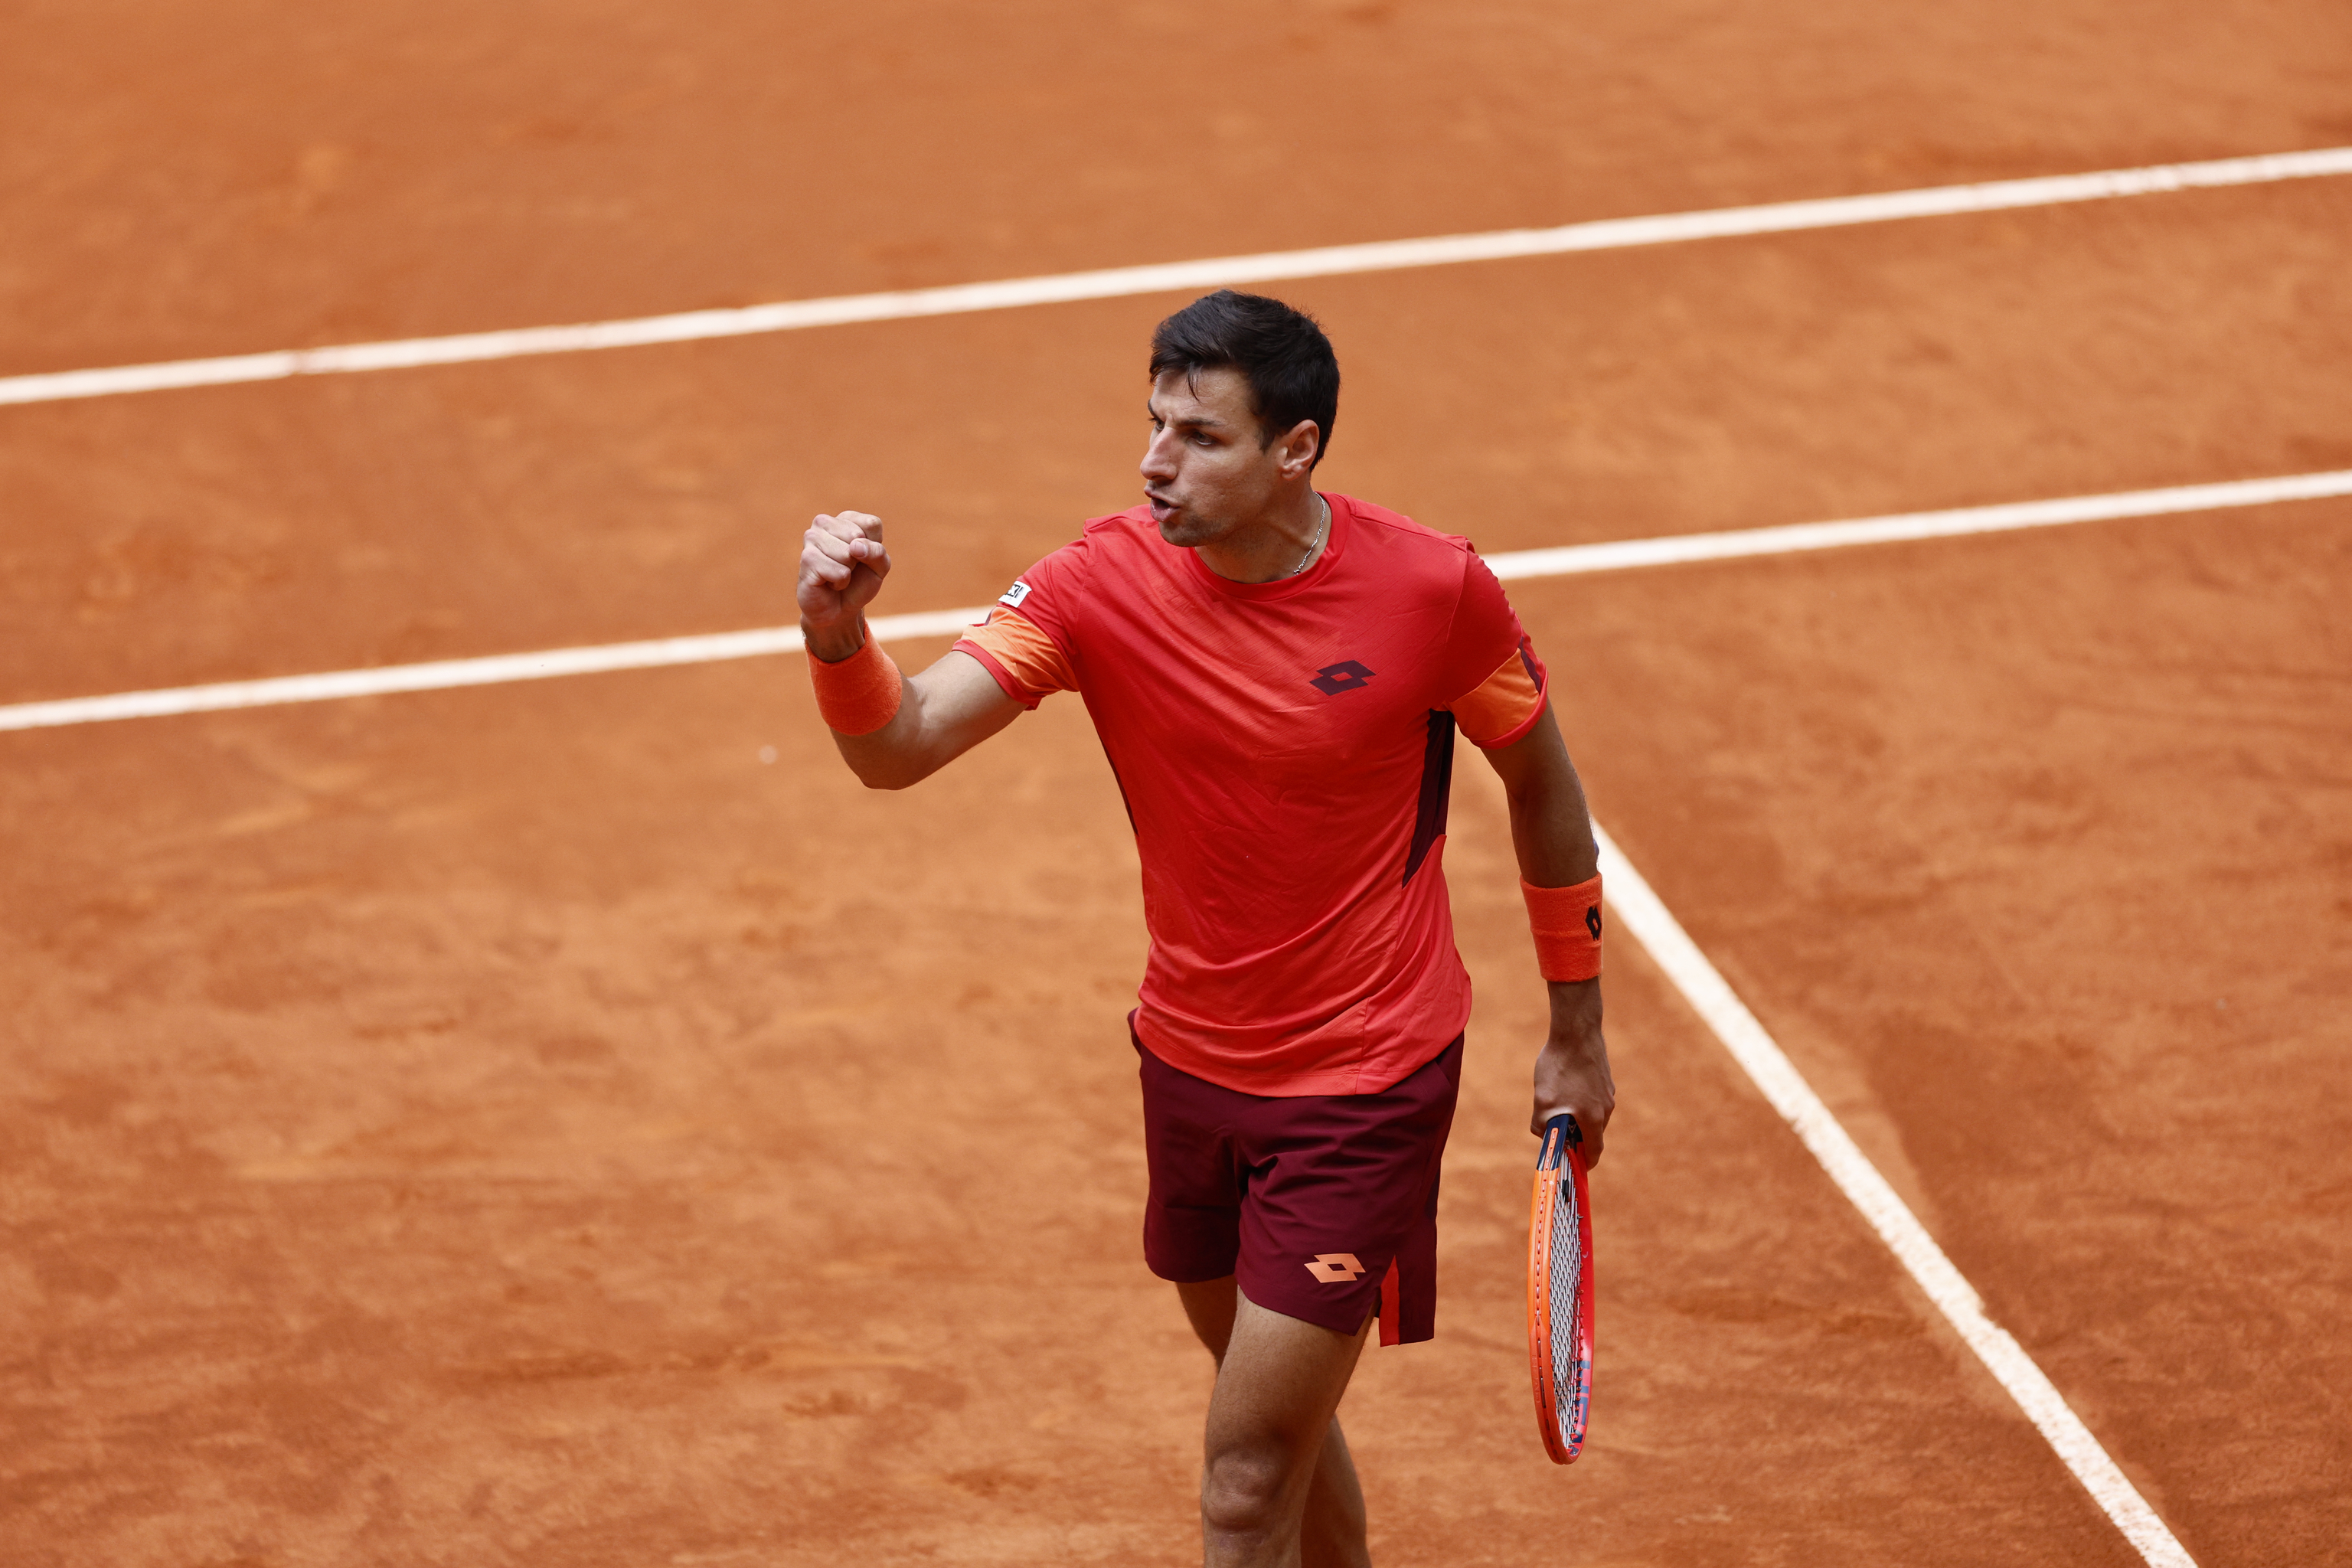 El espaol Bernab Zapata celebra un tanto contra Roman Safiullin en el Madrid Open.